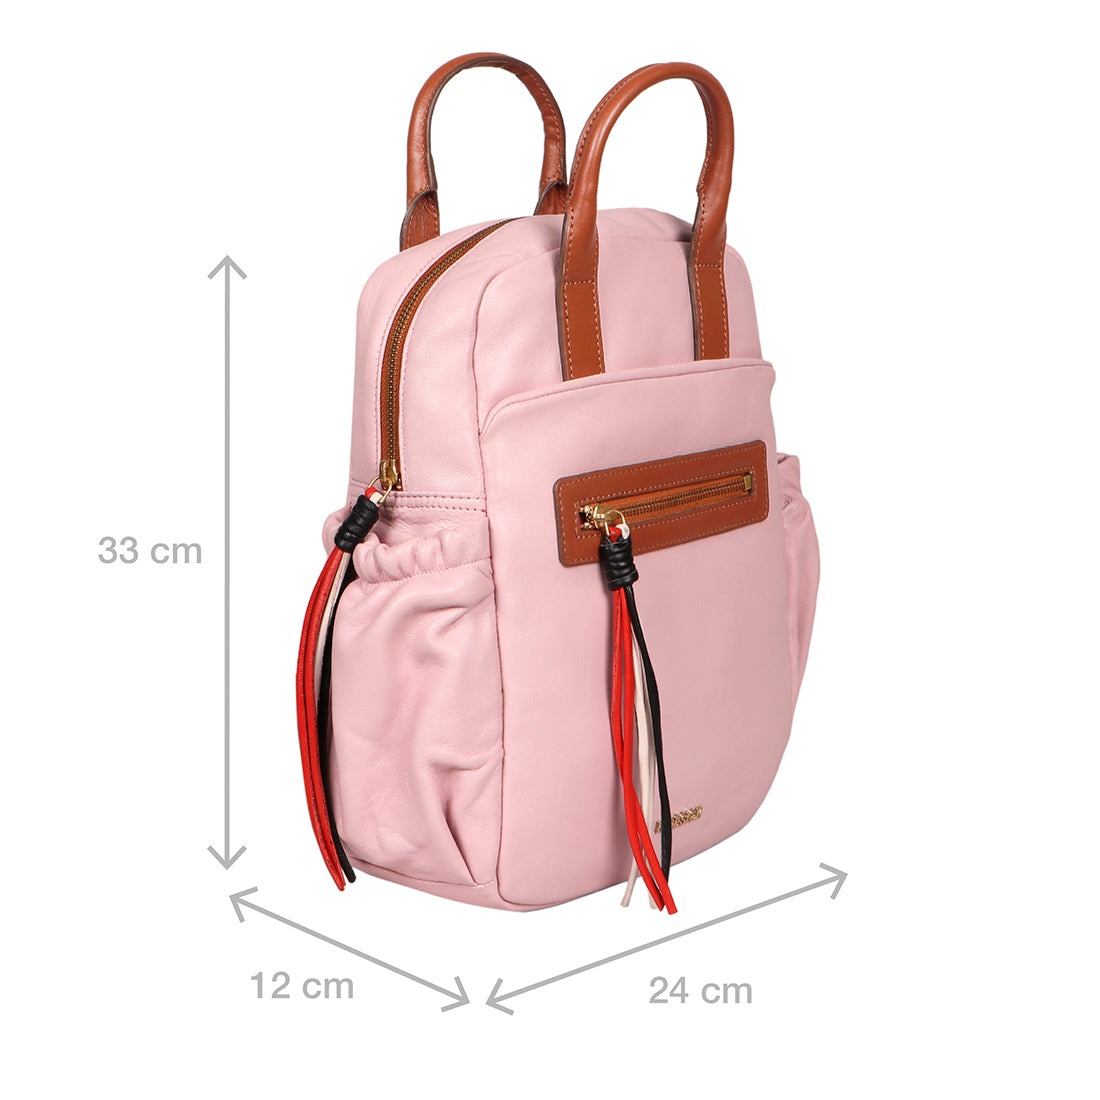 10 Most Stylish Backpacks for Women 2022 - Chic Designer Backpacks